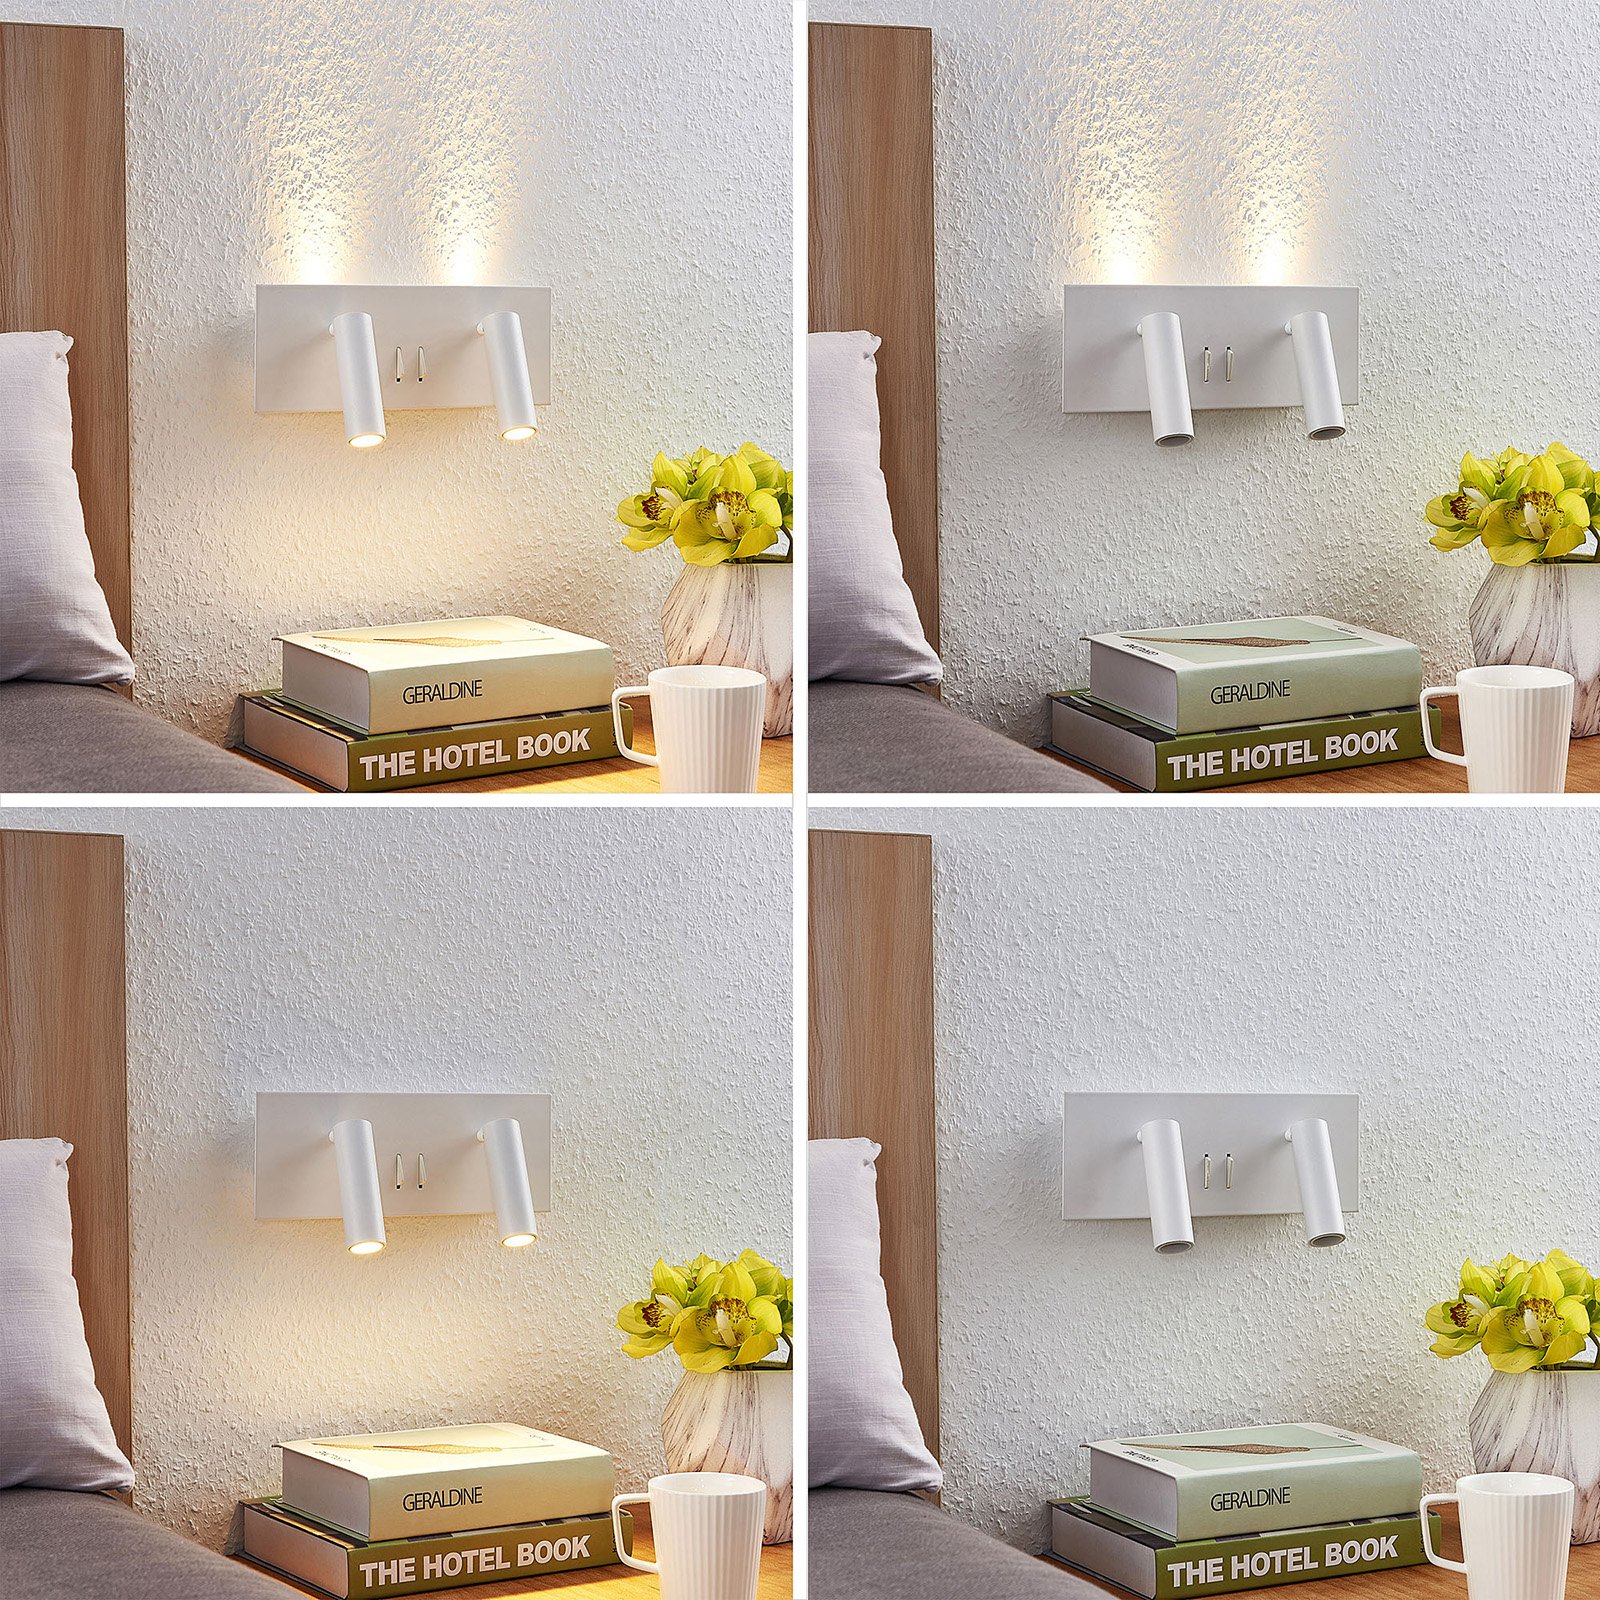 Lucande Magya Applique LED blanche à 4 lampes